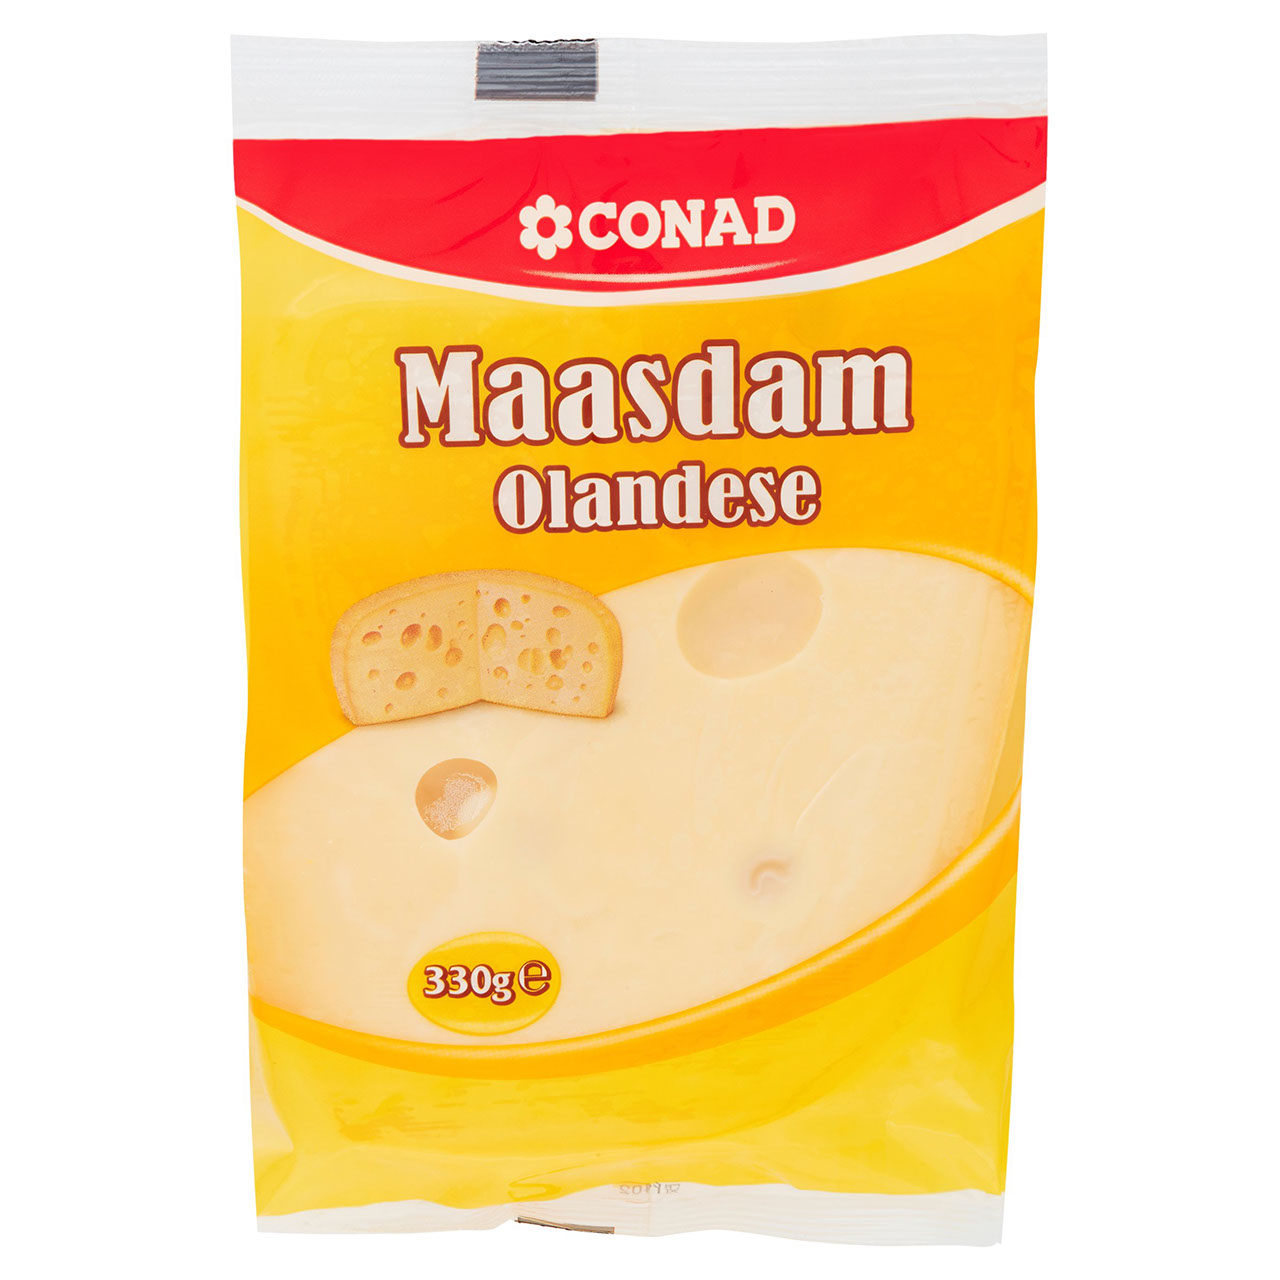 Maasdam Olandese 330 g Conad in vendita online